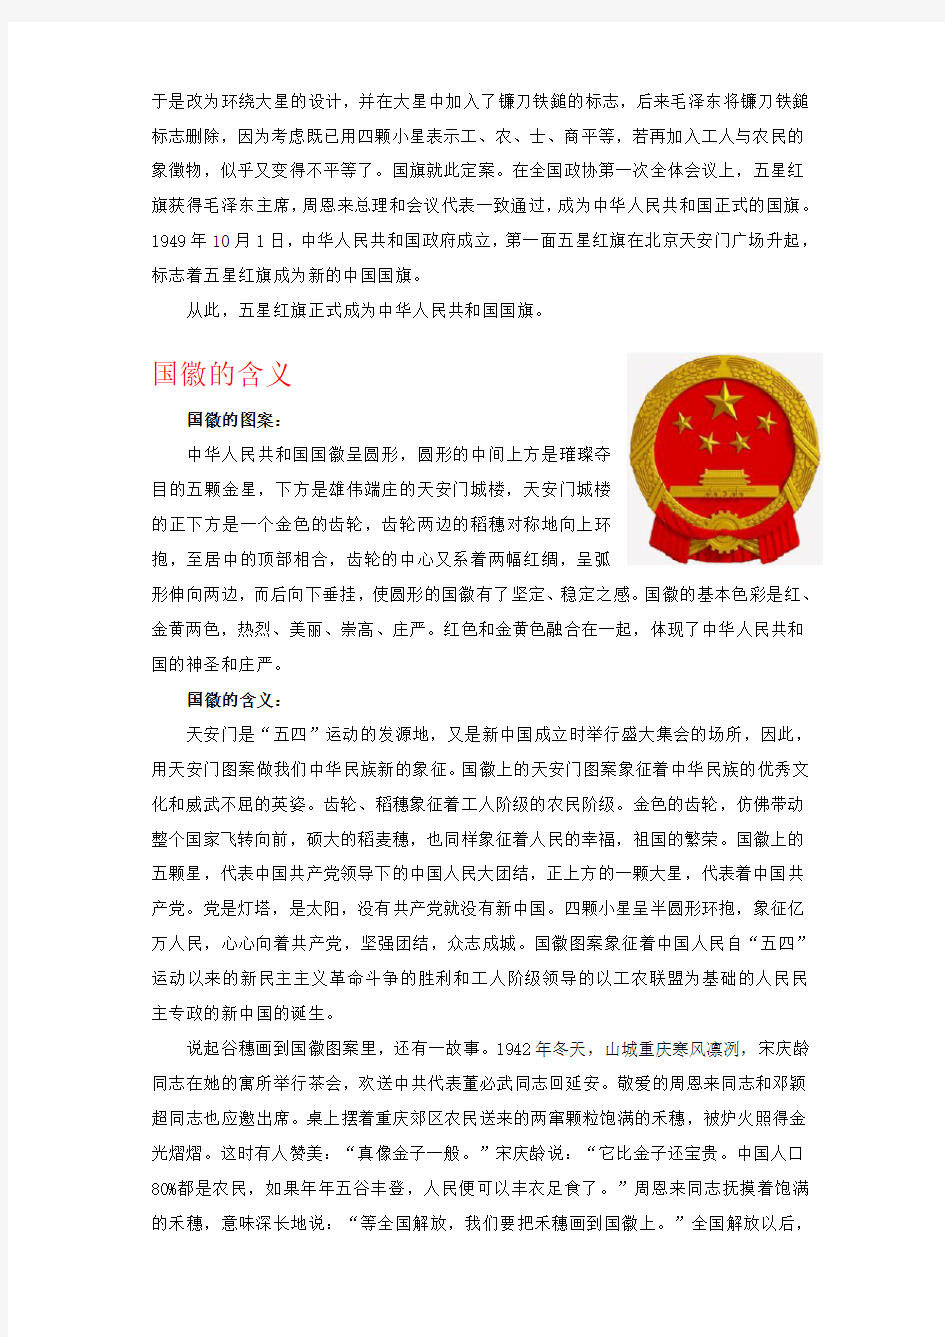 中国国旗-国徽-国歌的含义和来源.